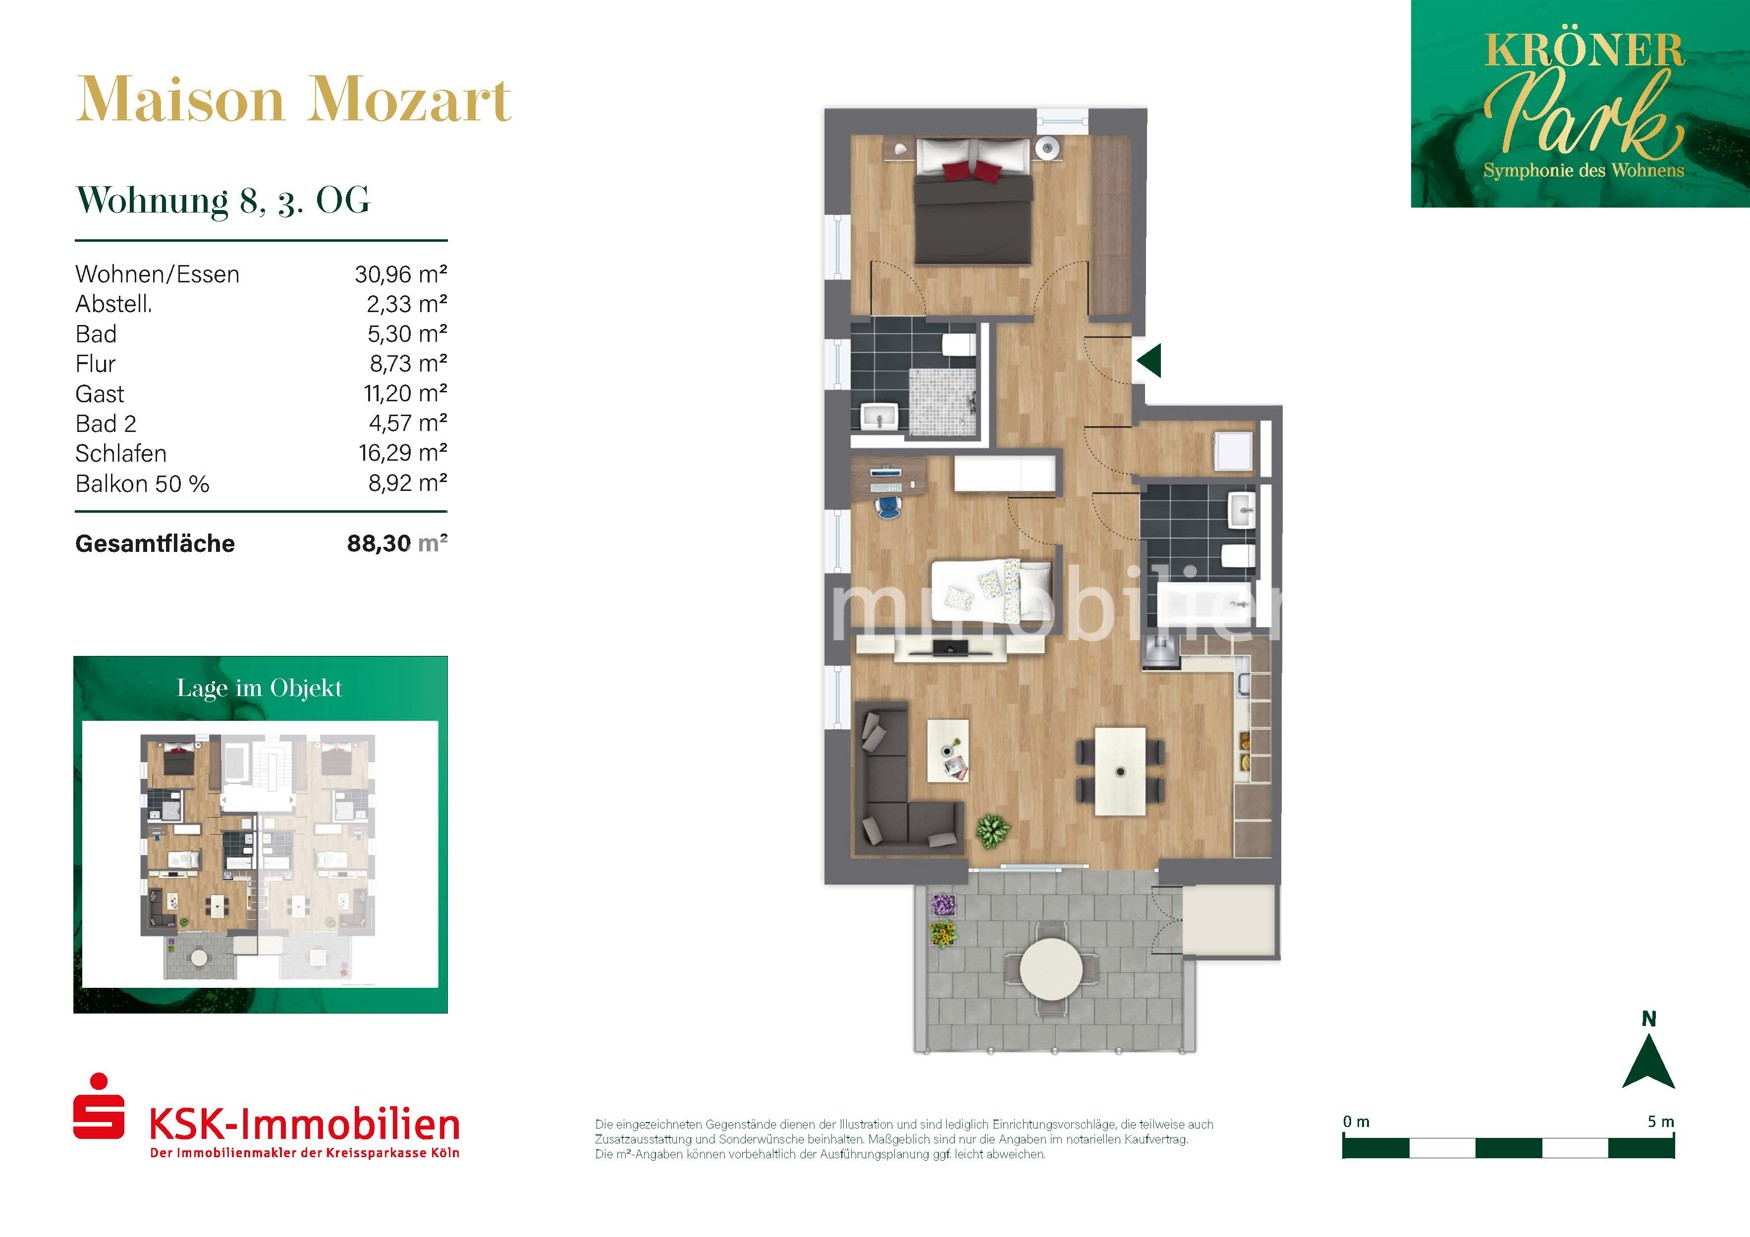 Grundriss Haus 1 Maison Mozart Wohnung 8